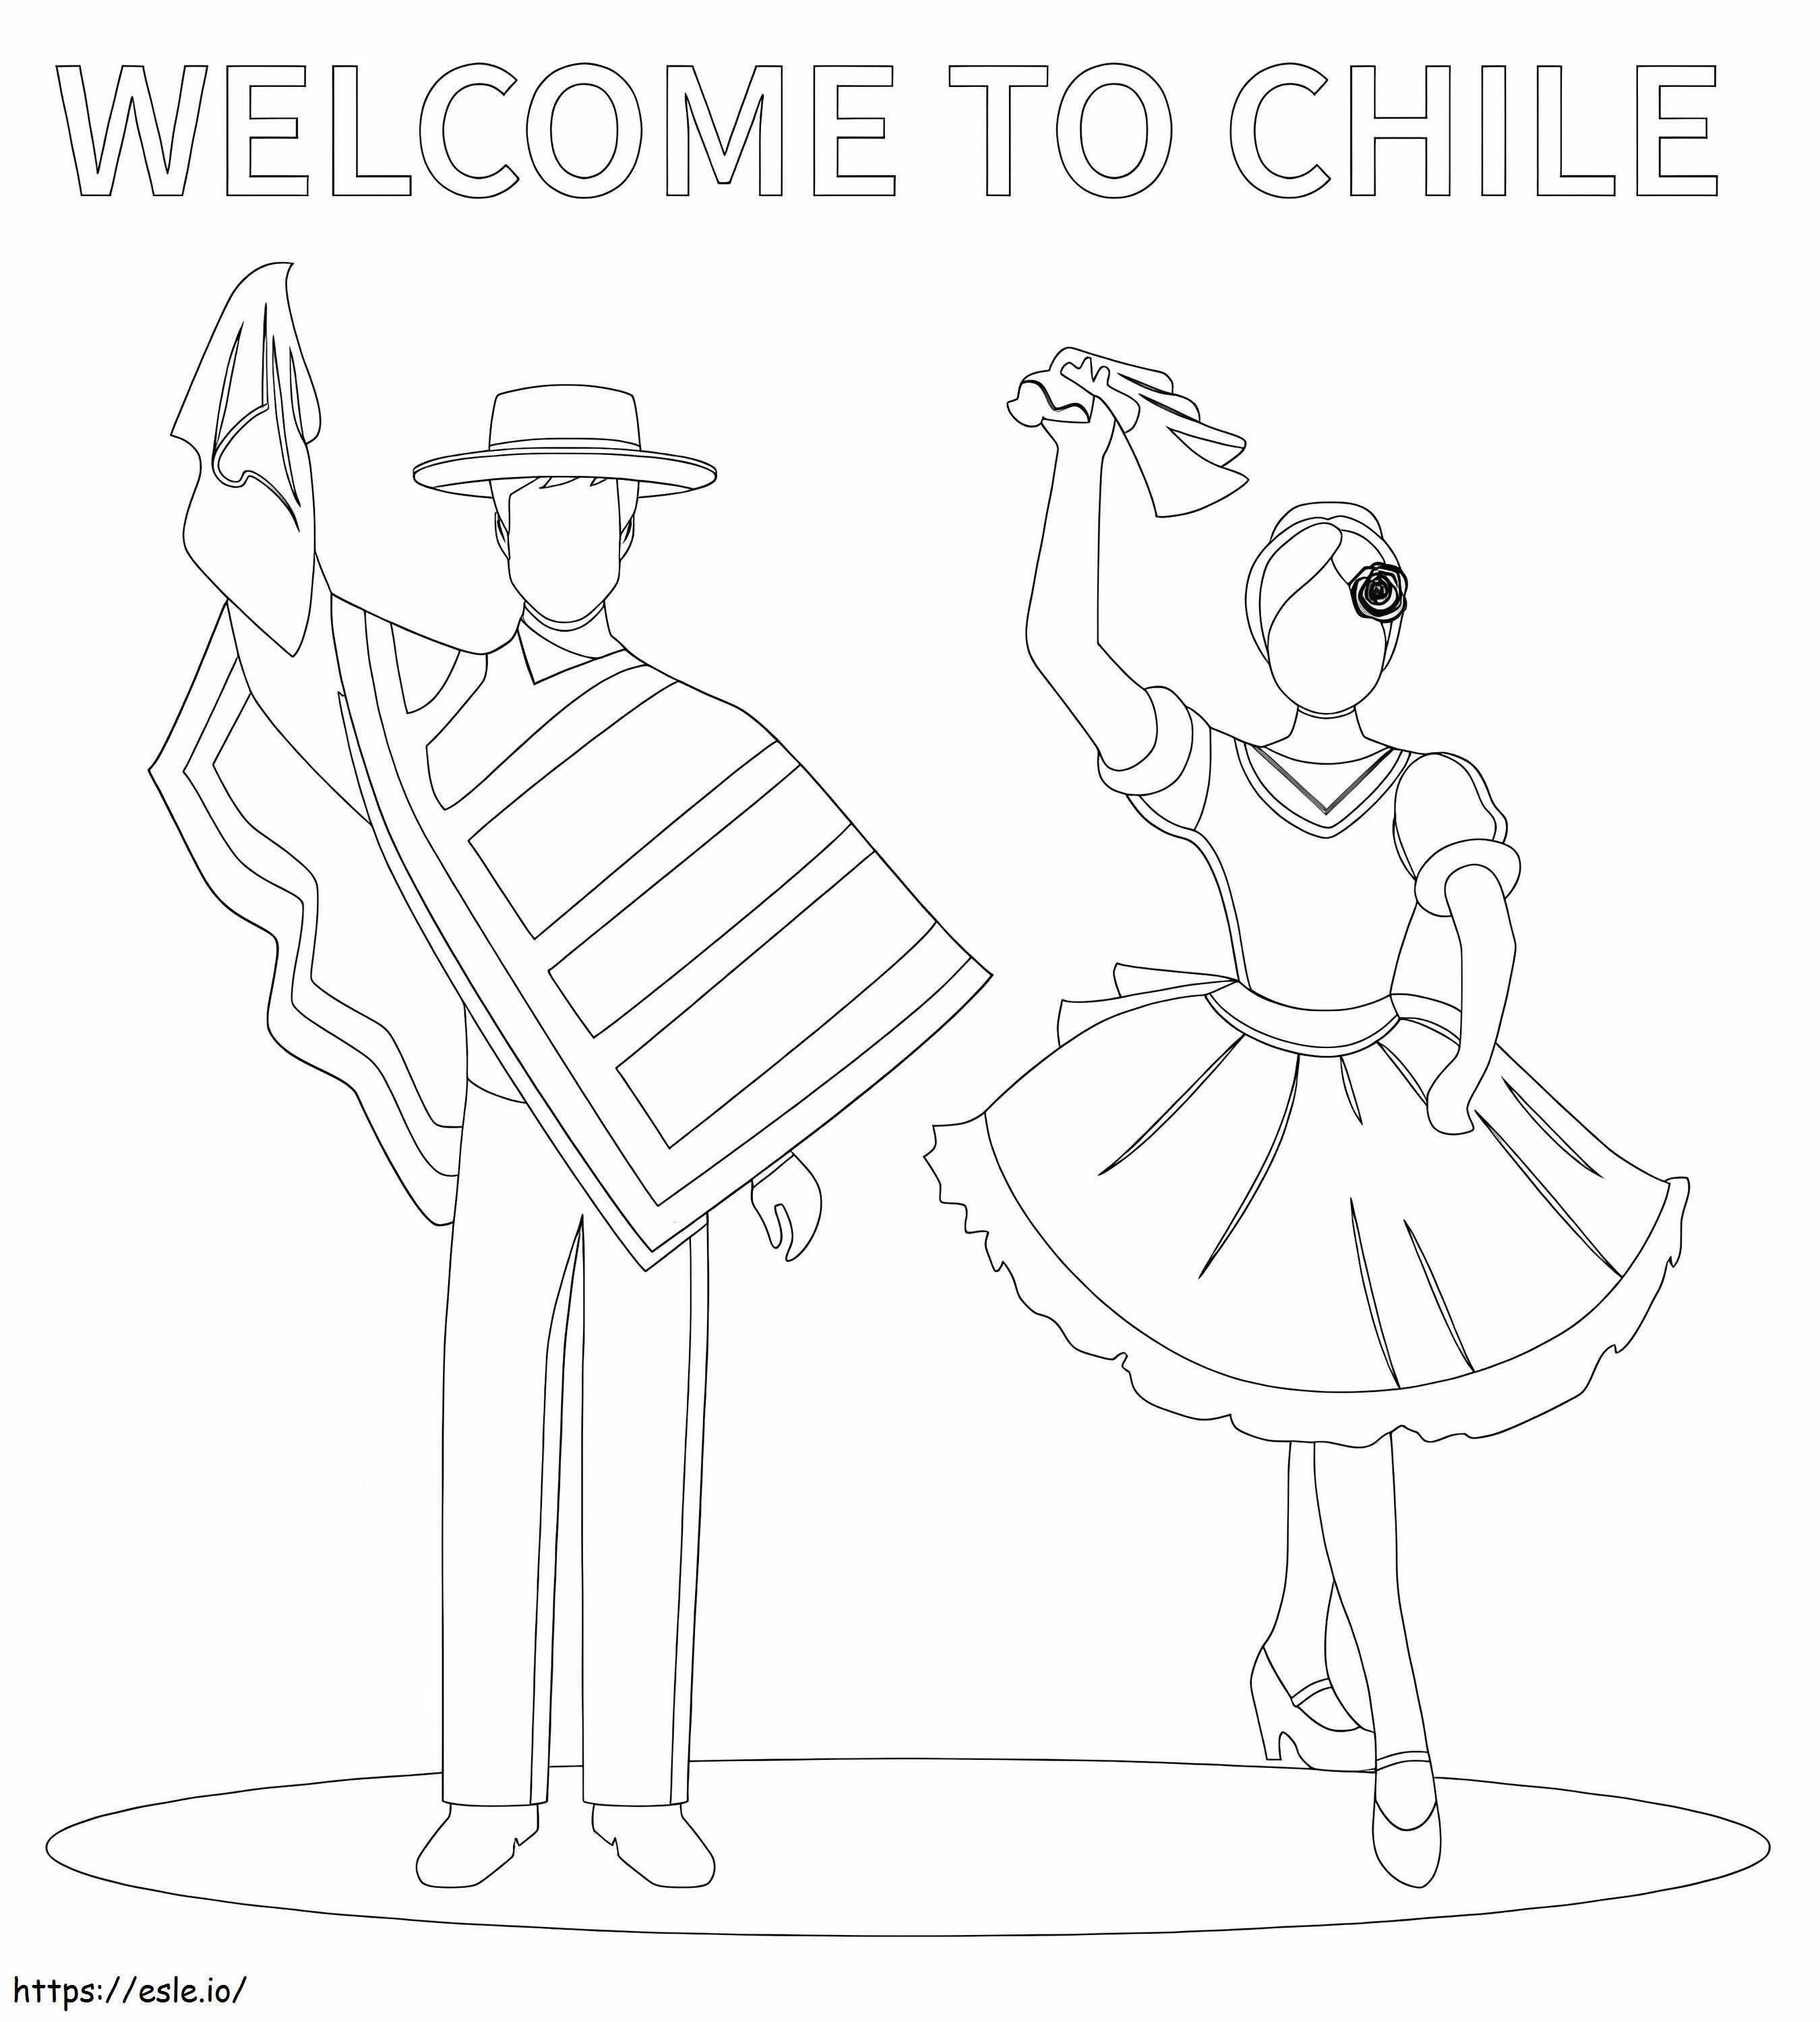 Şili'ye Hoş Geldiniz boyama